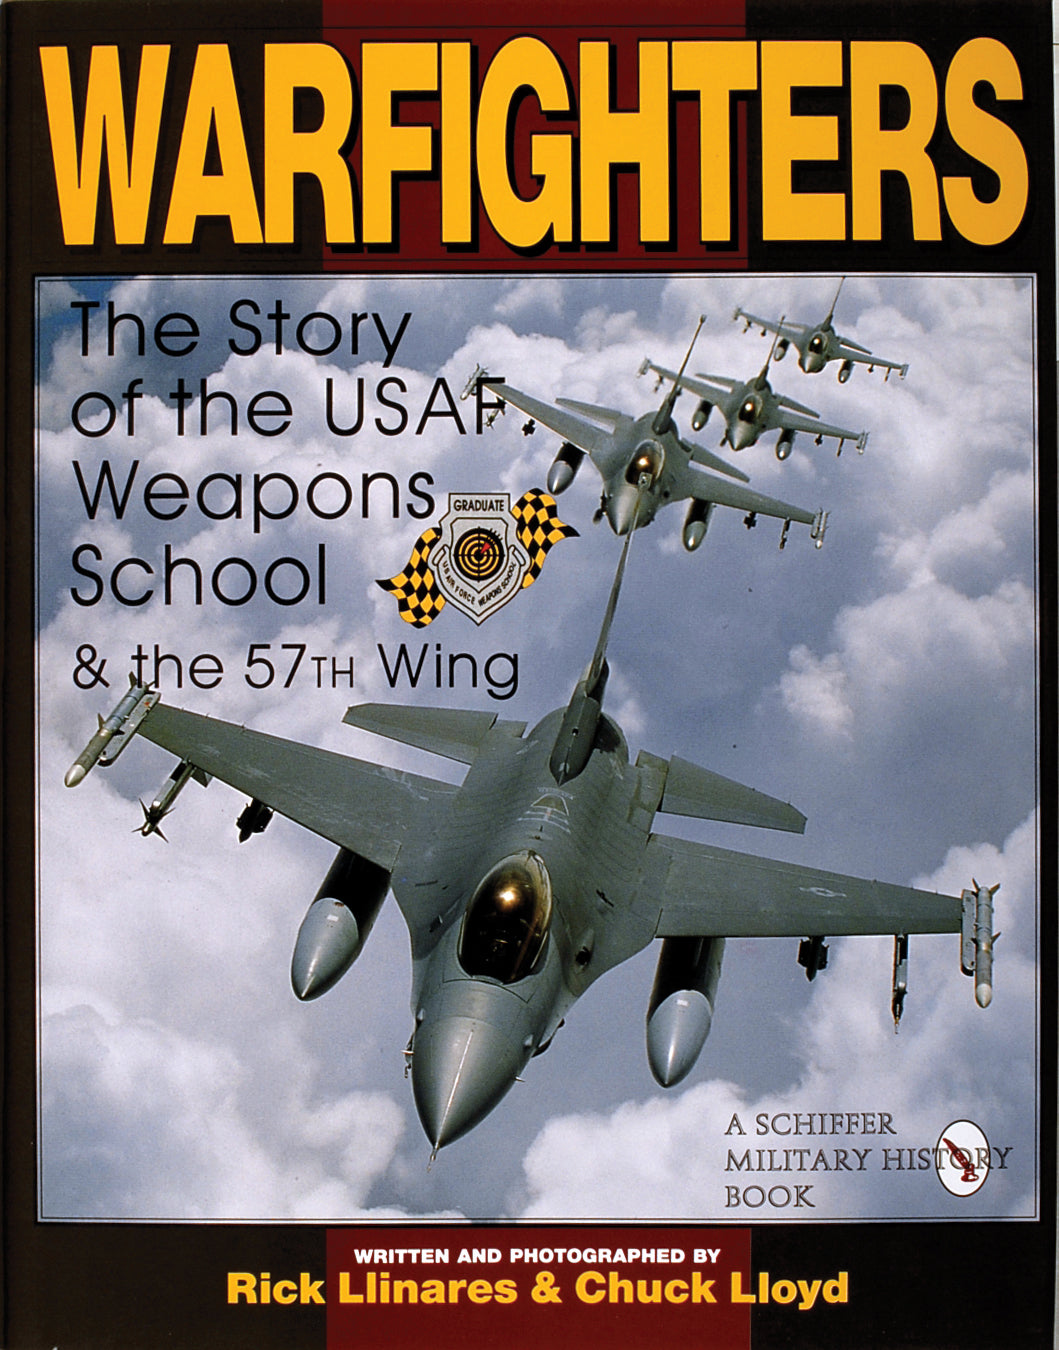 Warfighters